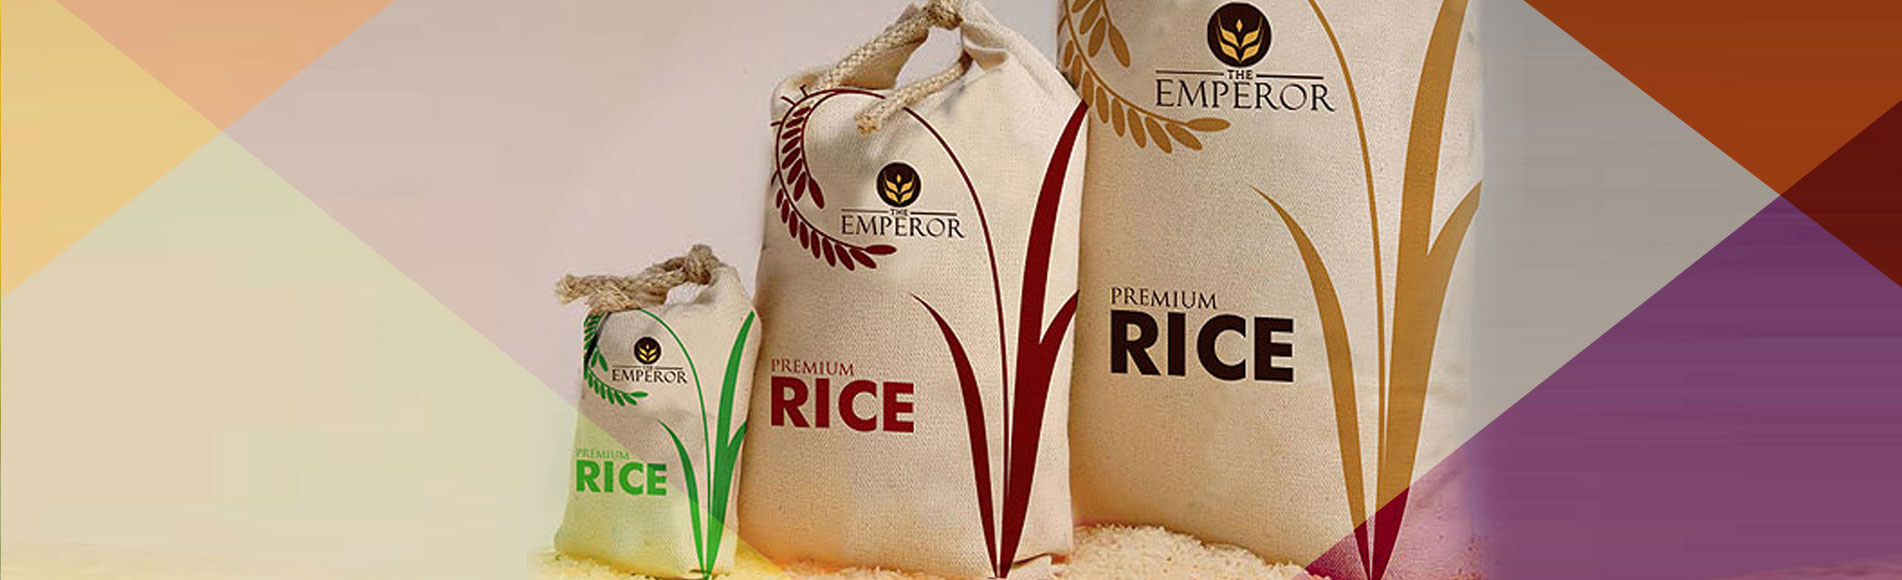 rice-bag-design-exports-1